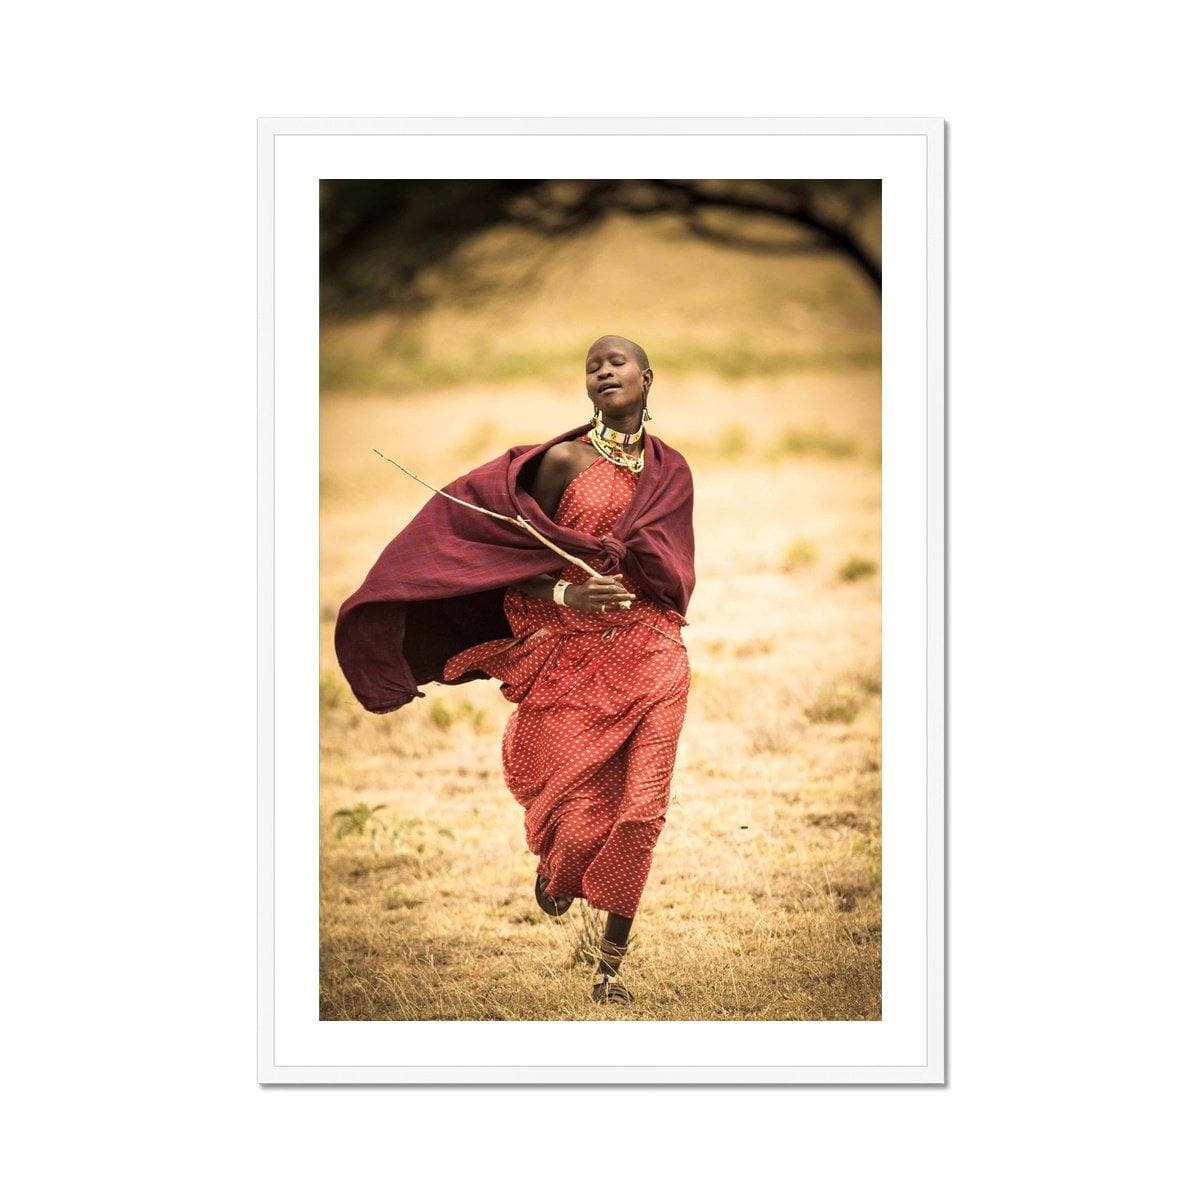 Maasai Dream - Sean Lee-Davies Sean Lee Davies